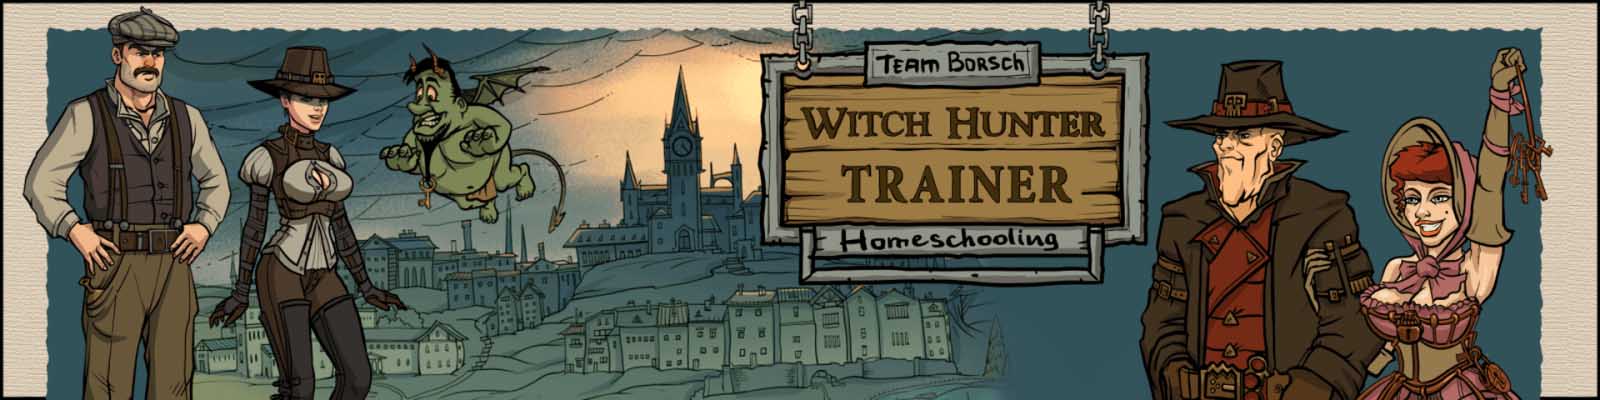 Witch Hunter Trainer 3d spel voor volwassenen